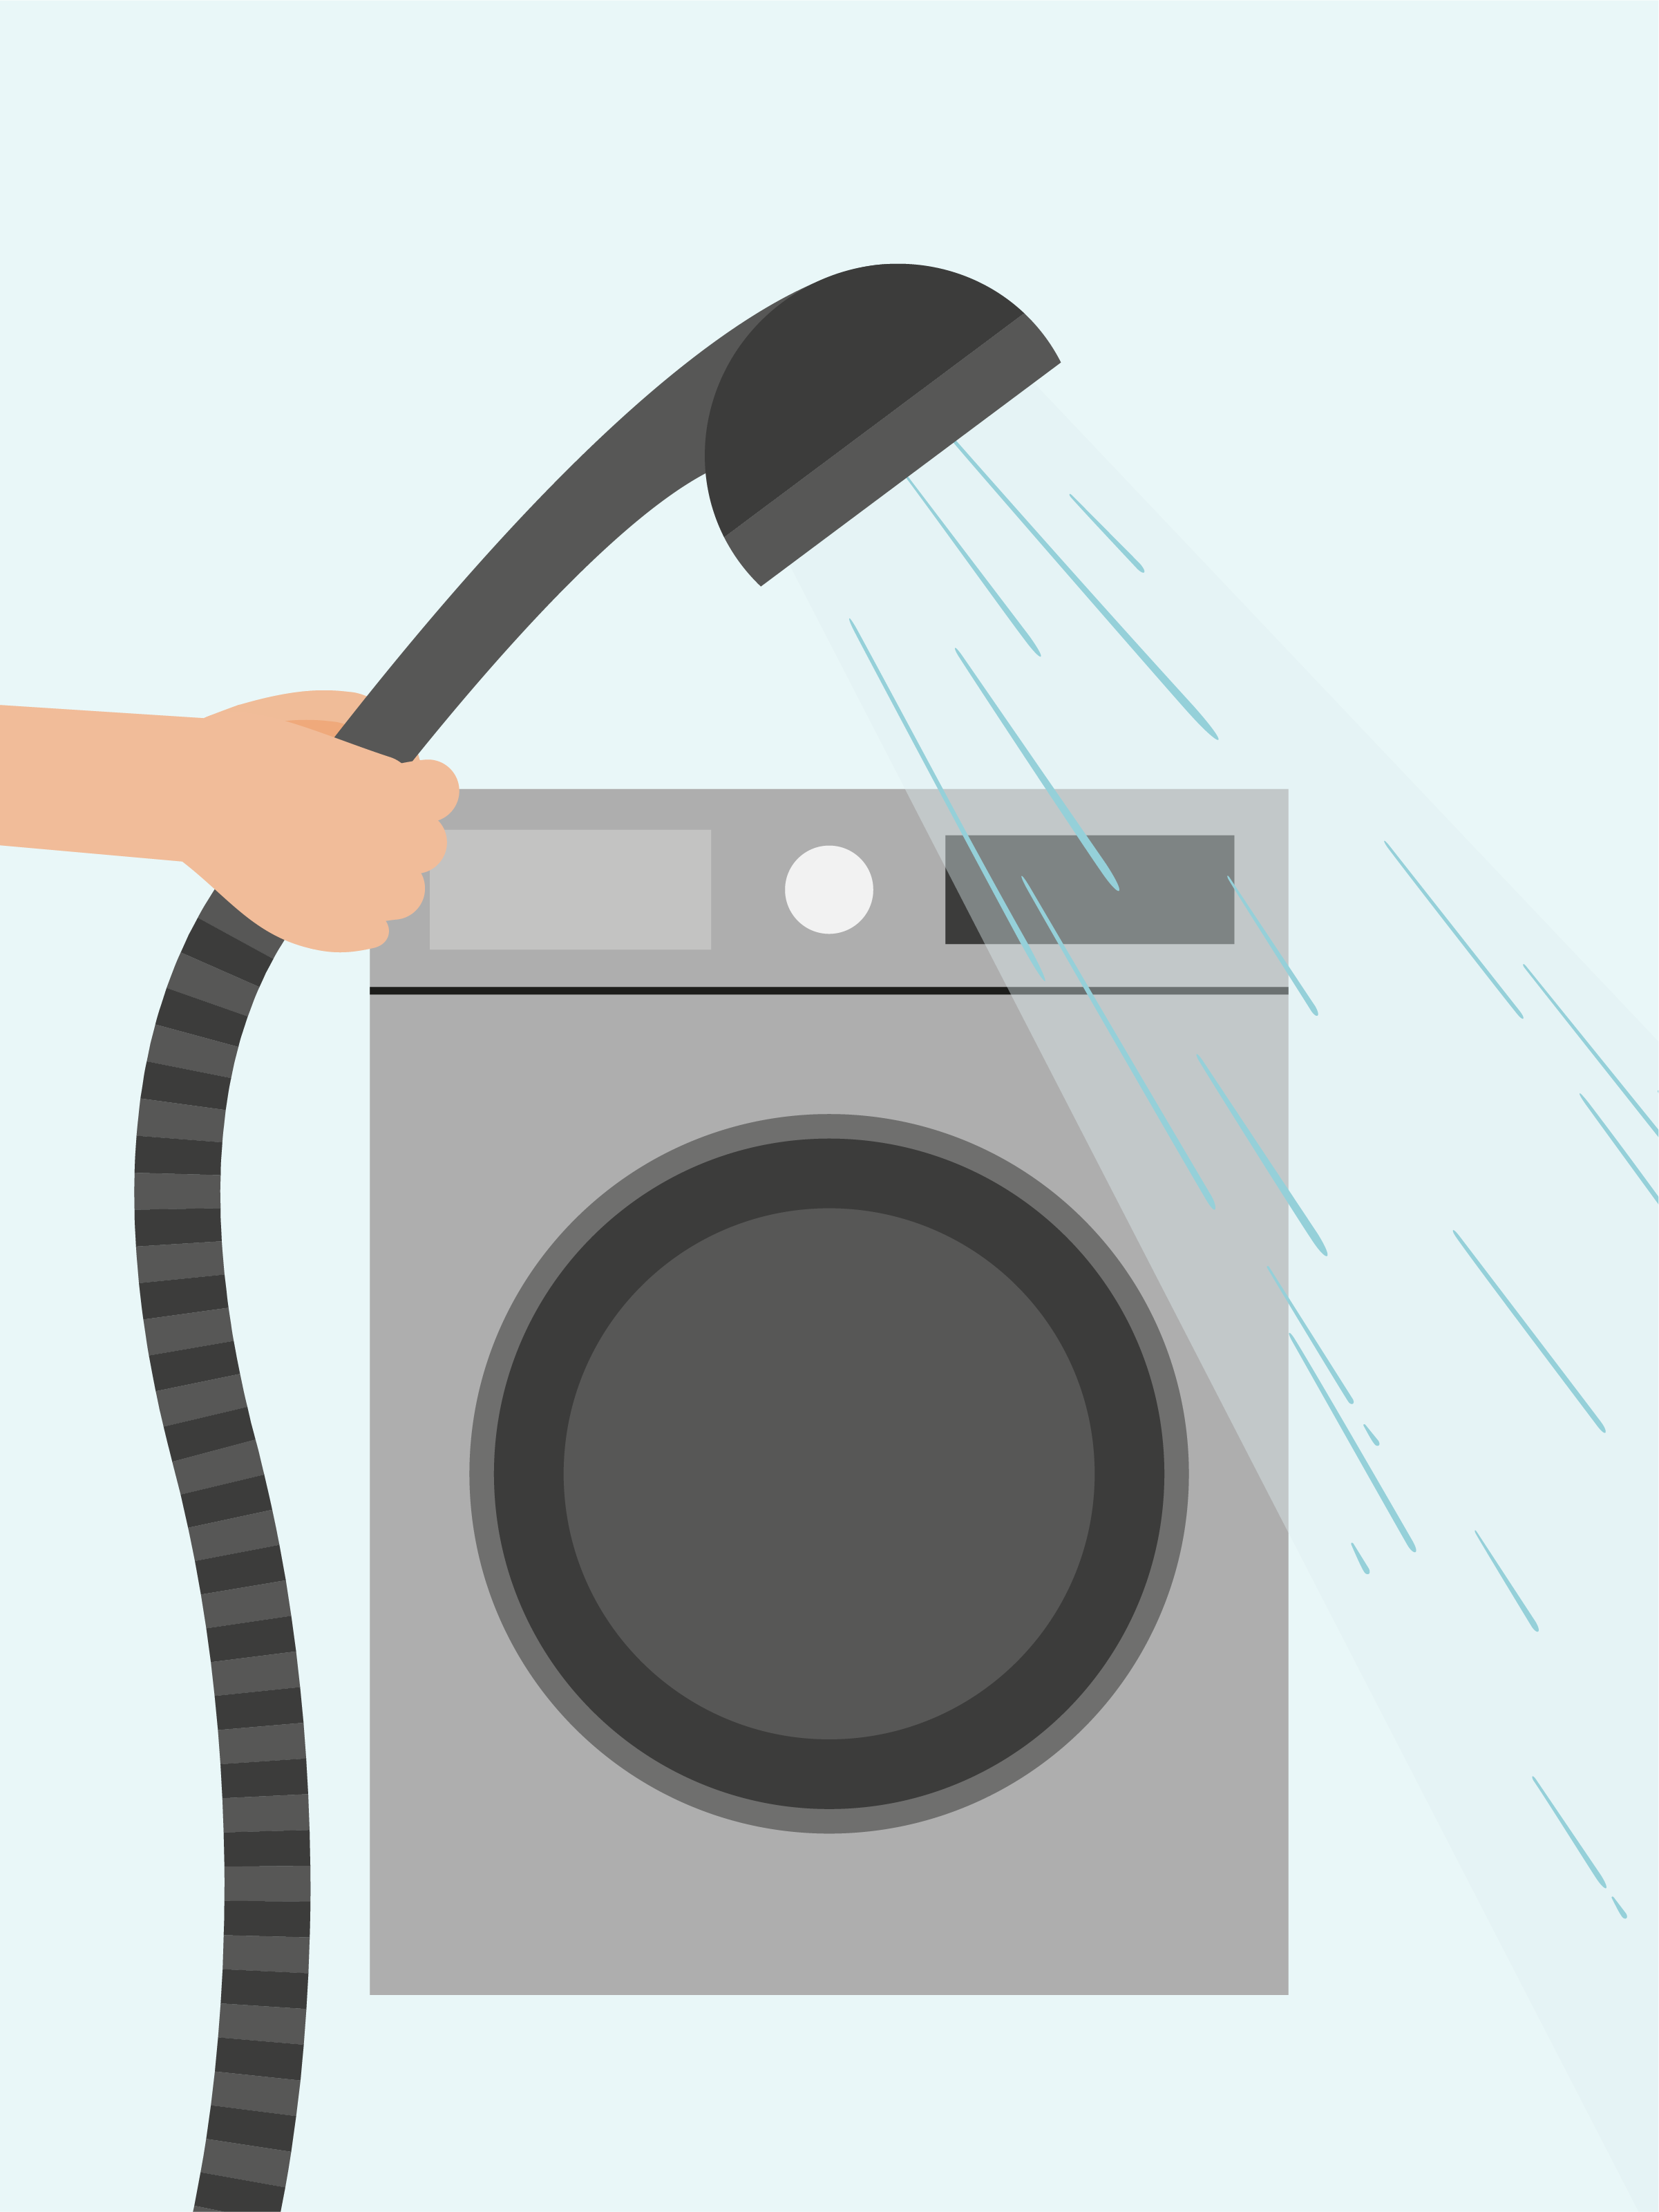 Ein Bild mit einer Waschmaschine im Hintergrund. Im Vordergrund ist eine Hand, die einen Duschkopf hält, aus dem gerade Wasser läuft. Beim Waschen lässt sich durch einen wassersparenden Duschkopf und Waschen bei geringen Temperaturen Energie und Wasser einsparen. 